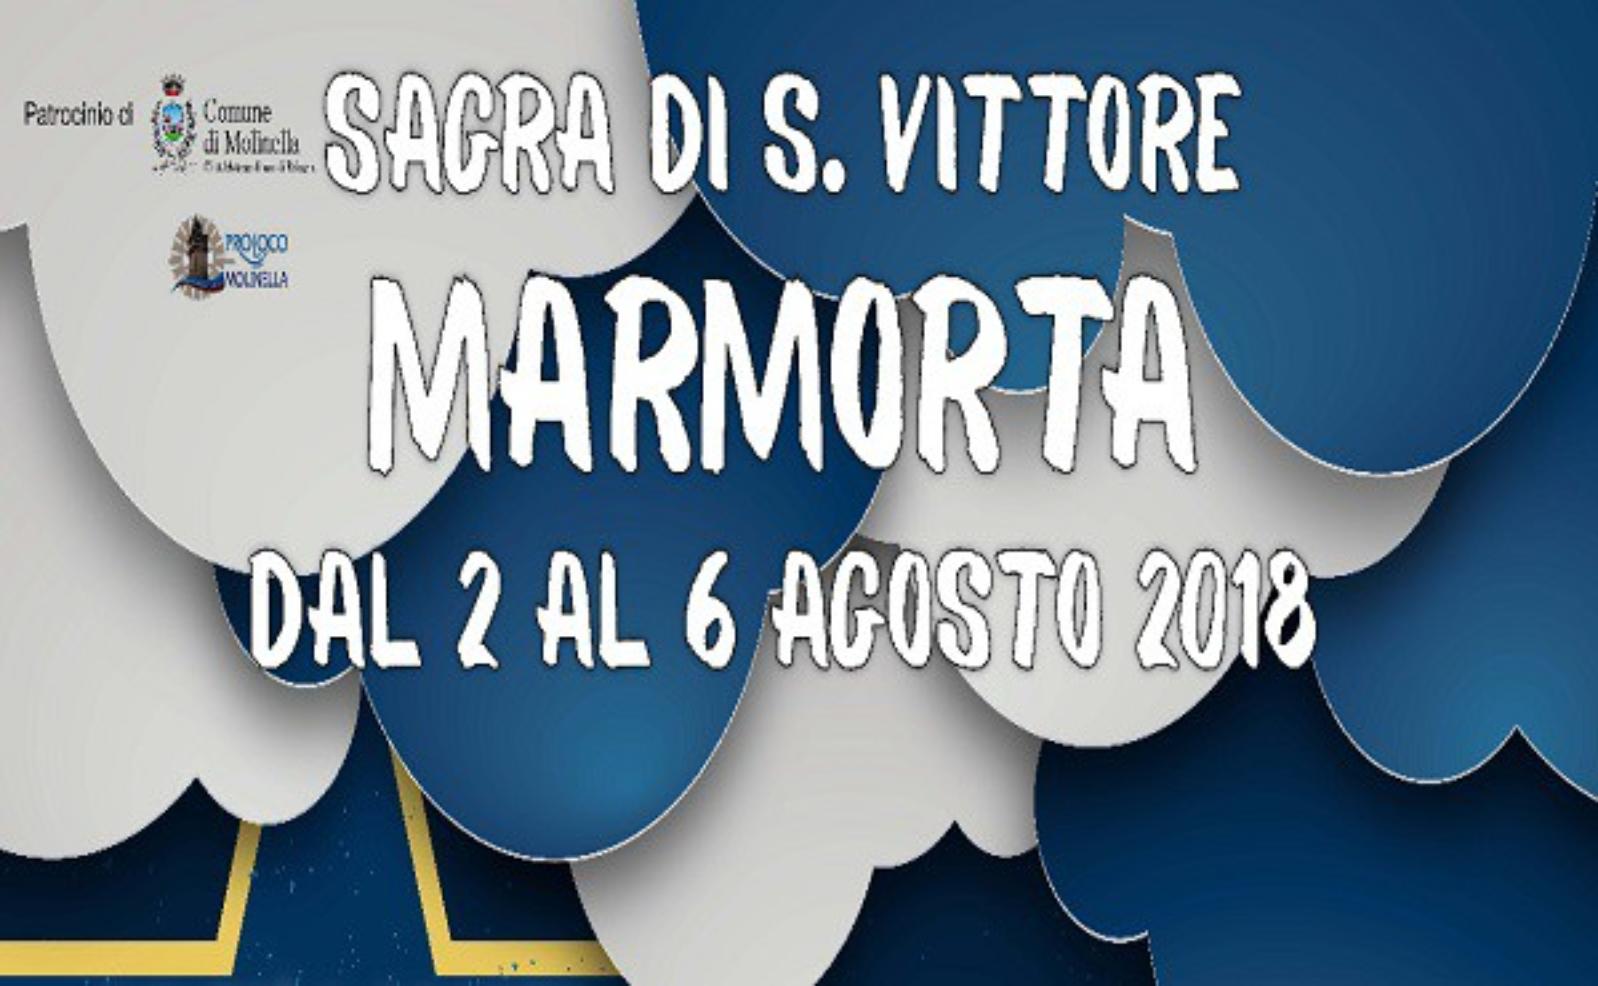 Festival of S. Vittore Marmorta